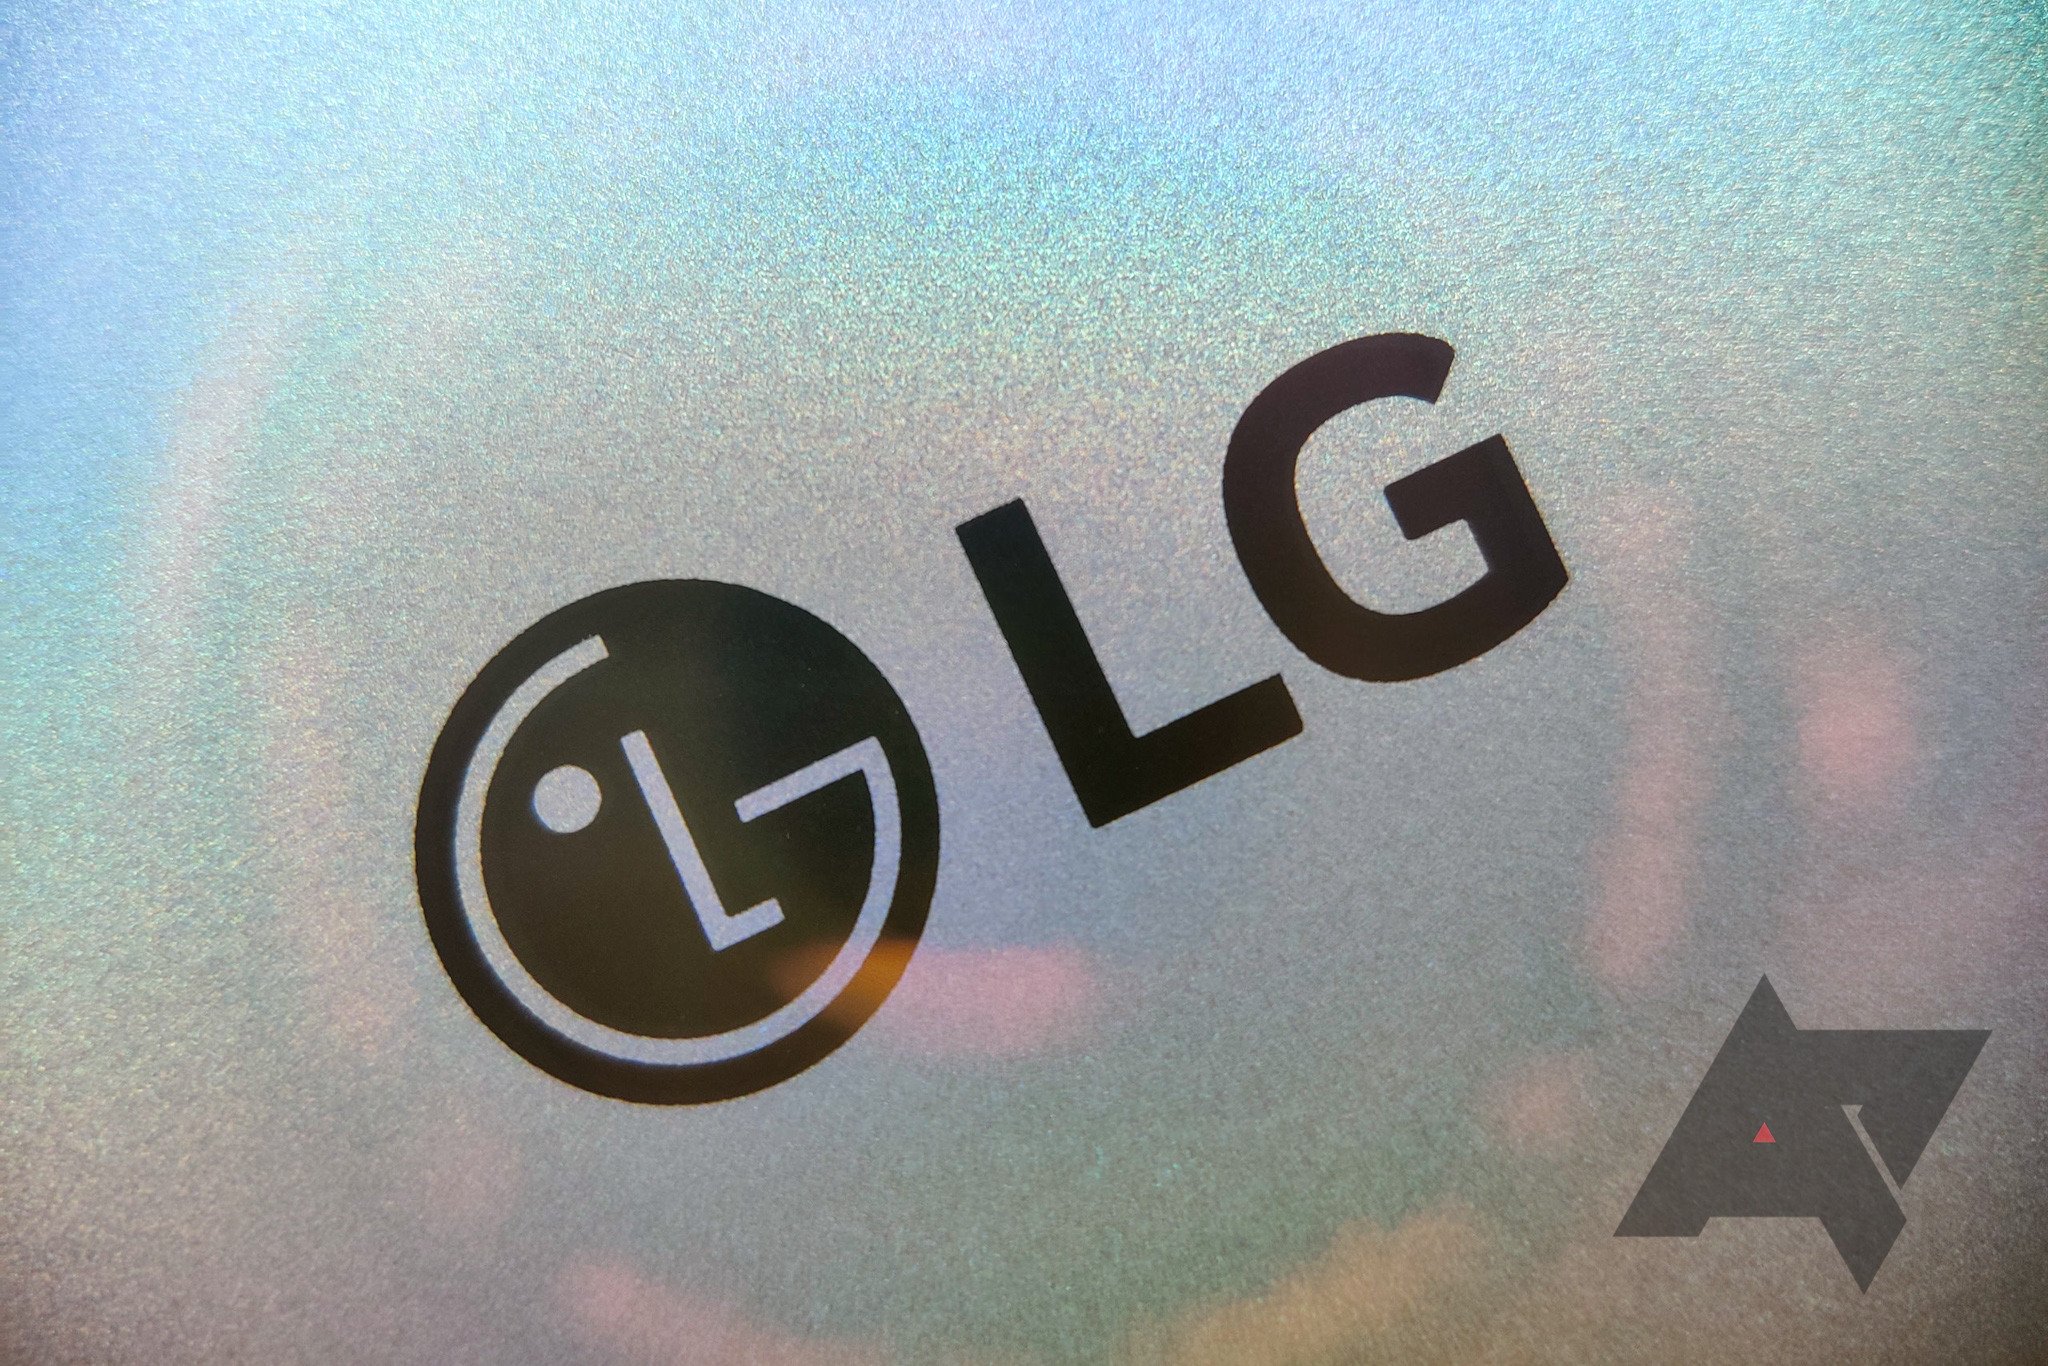 LG реструктурирует бизнес по производству смартфонов